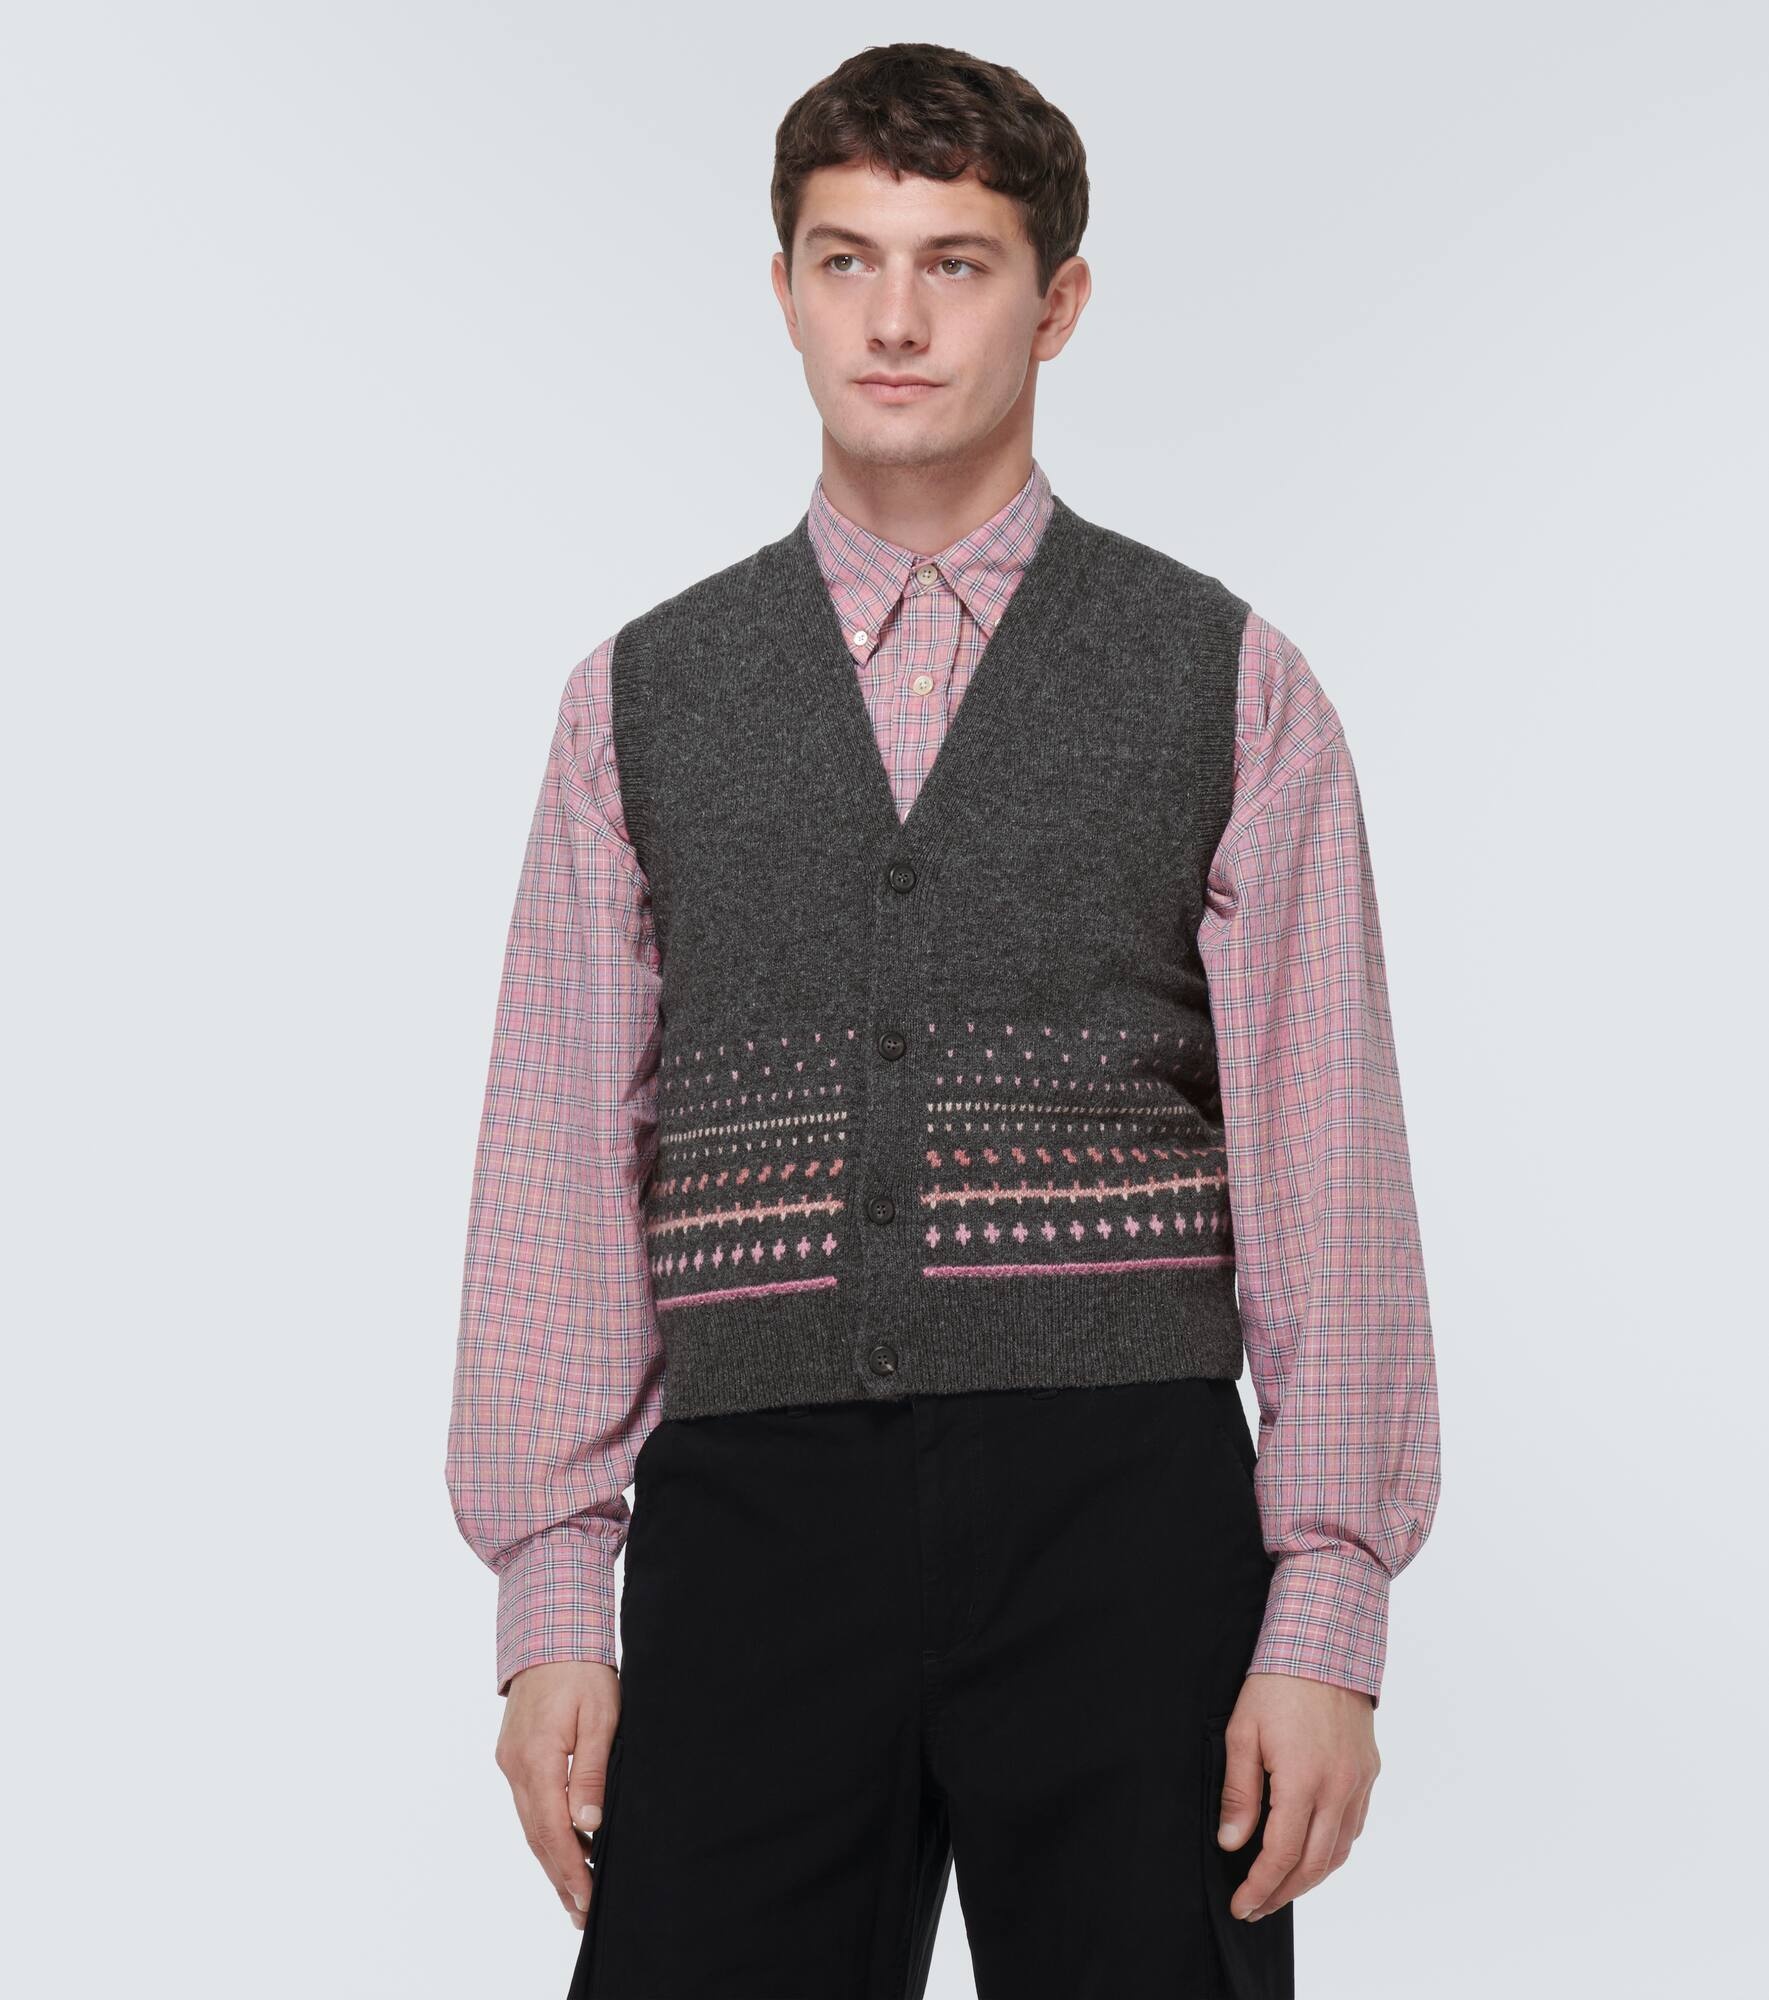 Wool sweater vest - 3